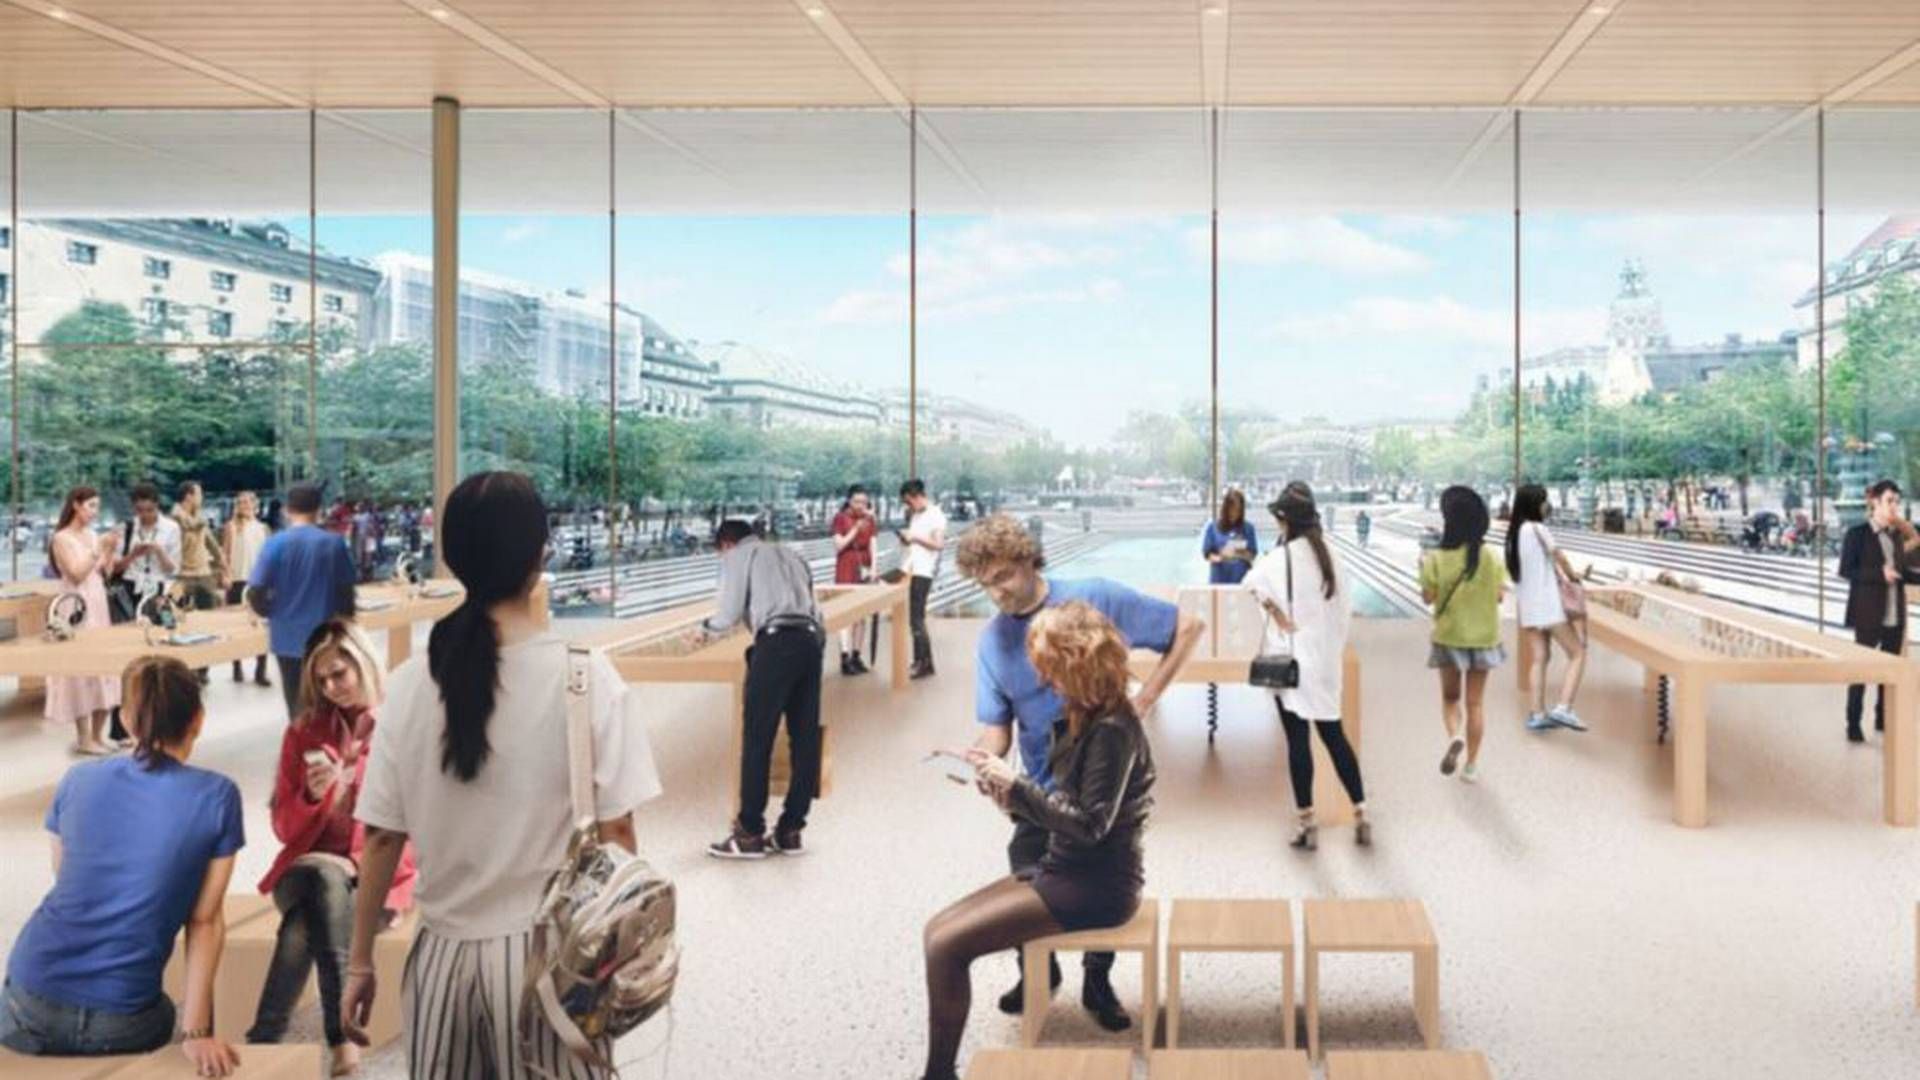 Flagskibsbutikken, Apple havde planer om at bygge, bliver alligevel ikke til noget, efter de svenske politikere har sagt nej. | Foto: APPLE AND FOSTER+PARTNERS